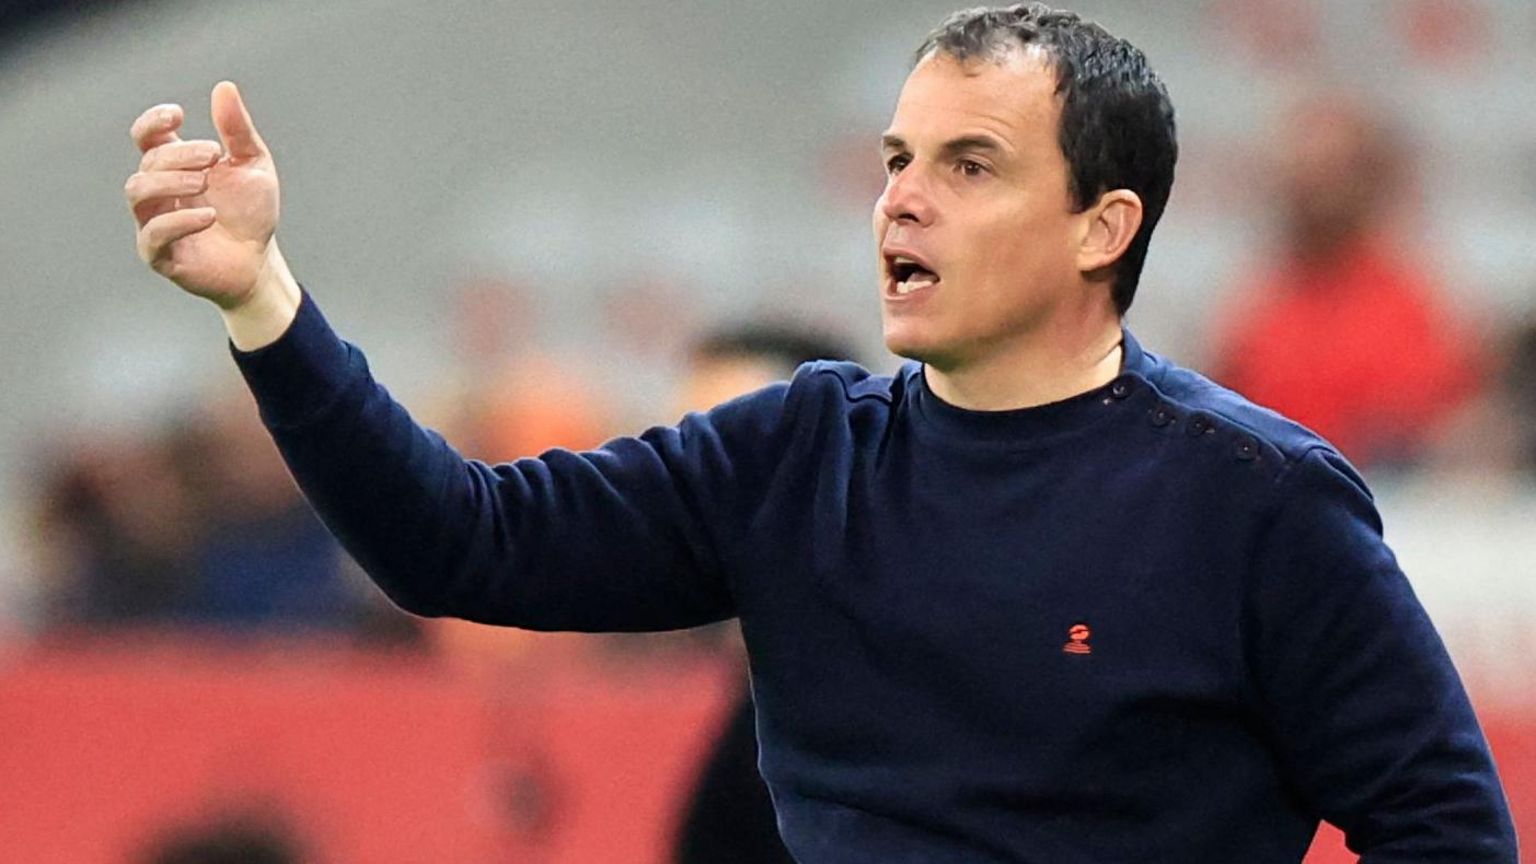 Regis Le Bris: Sunderland appoint Lorient boss as head coach ...